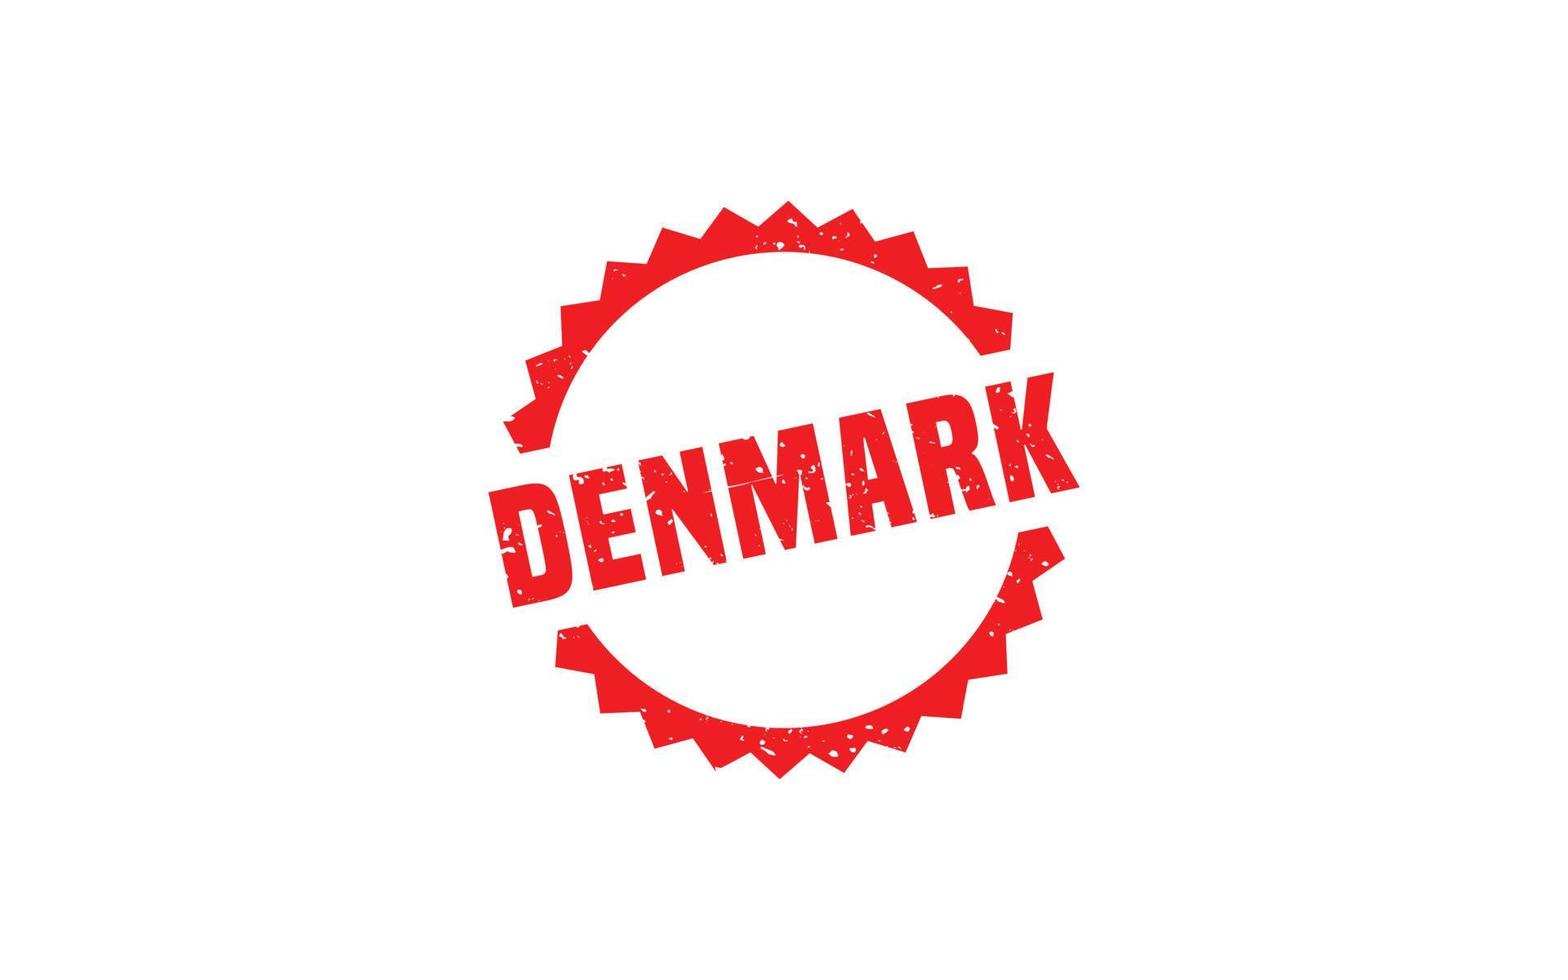 Dänemark Stempelgummi mit Grunge-Stil auf weißem Hintergrund vektor